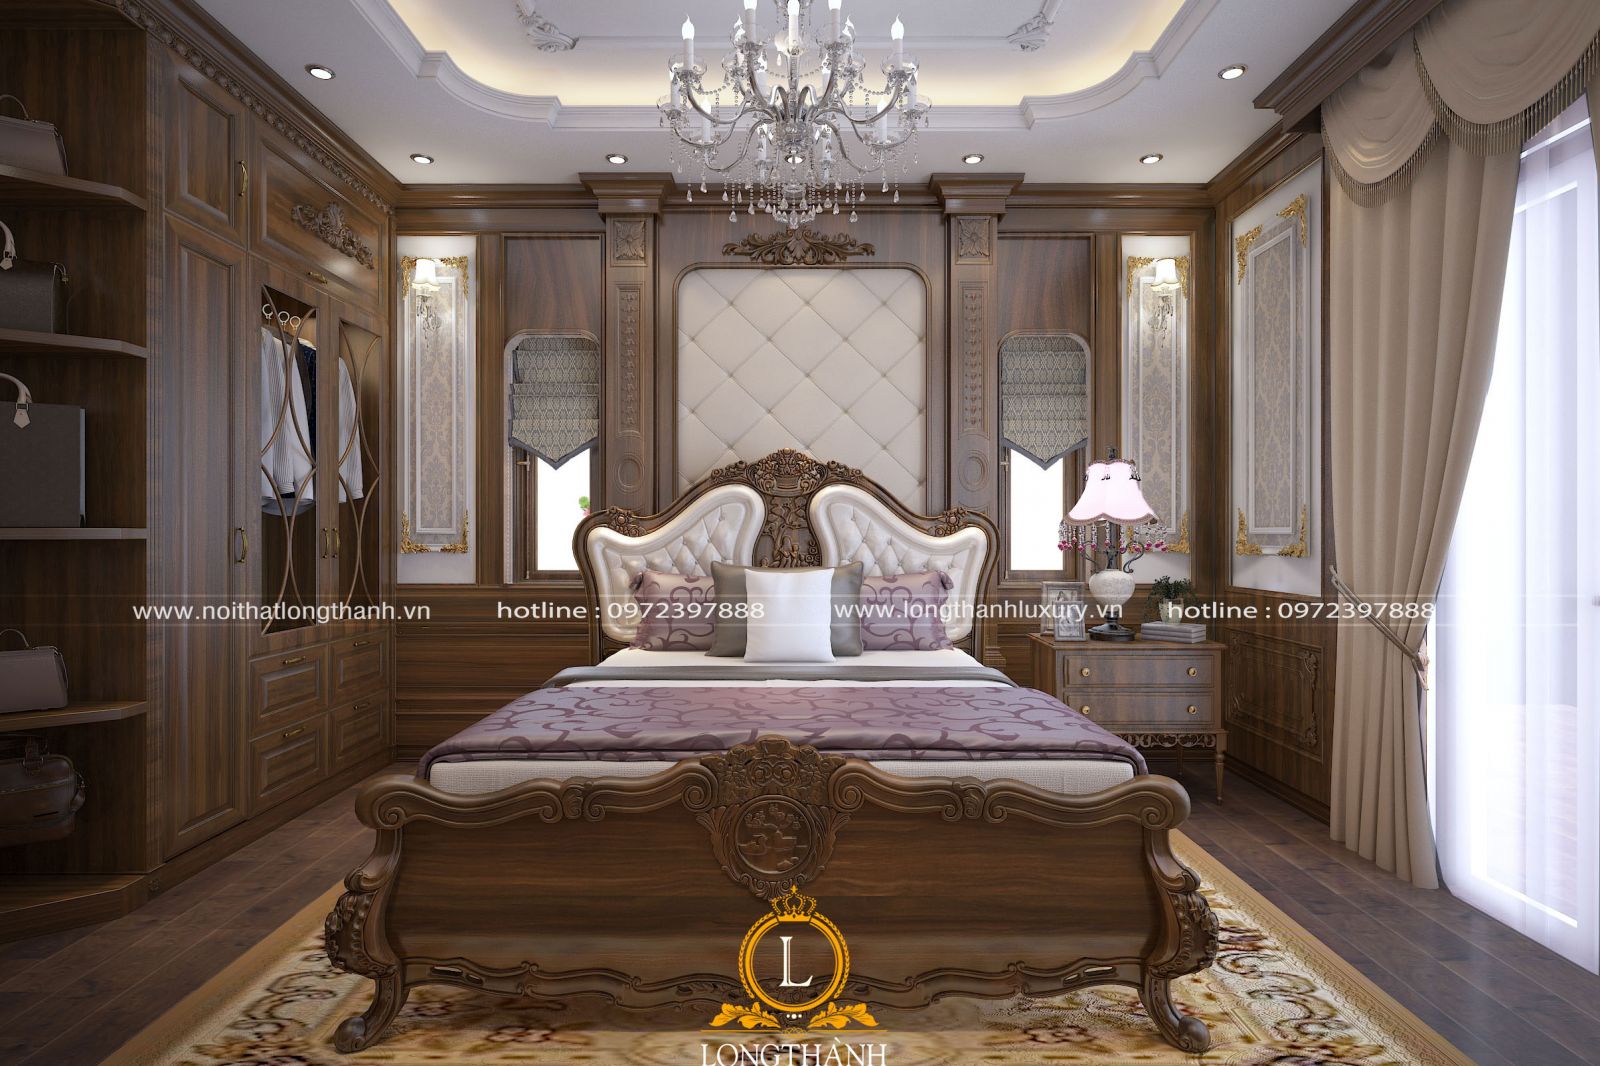 Căn phòng ngủ được thiết kế sang trọng với lối thiết kế tân cổ điển 